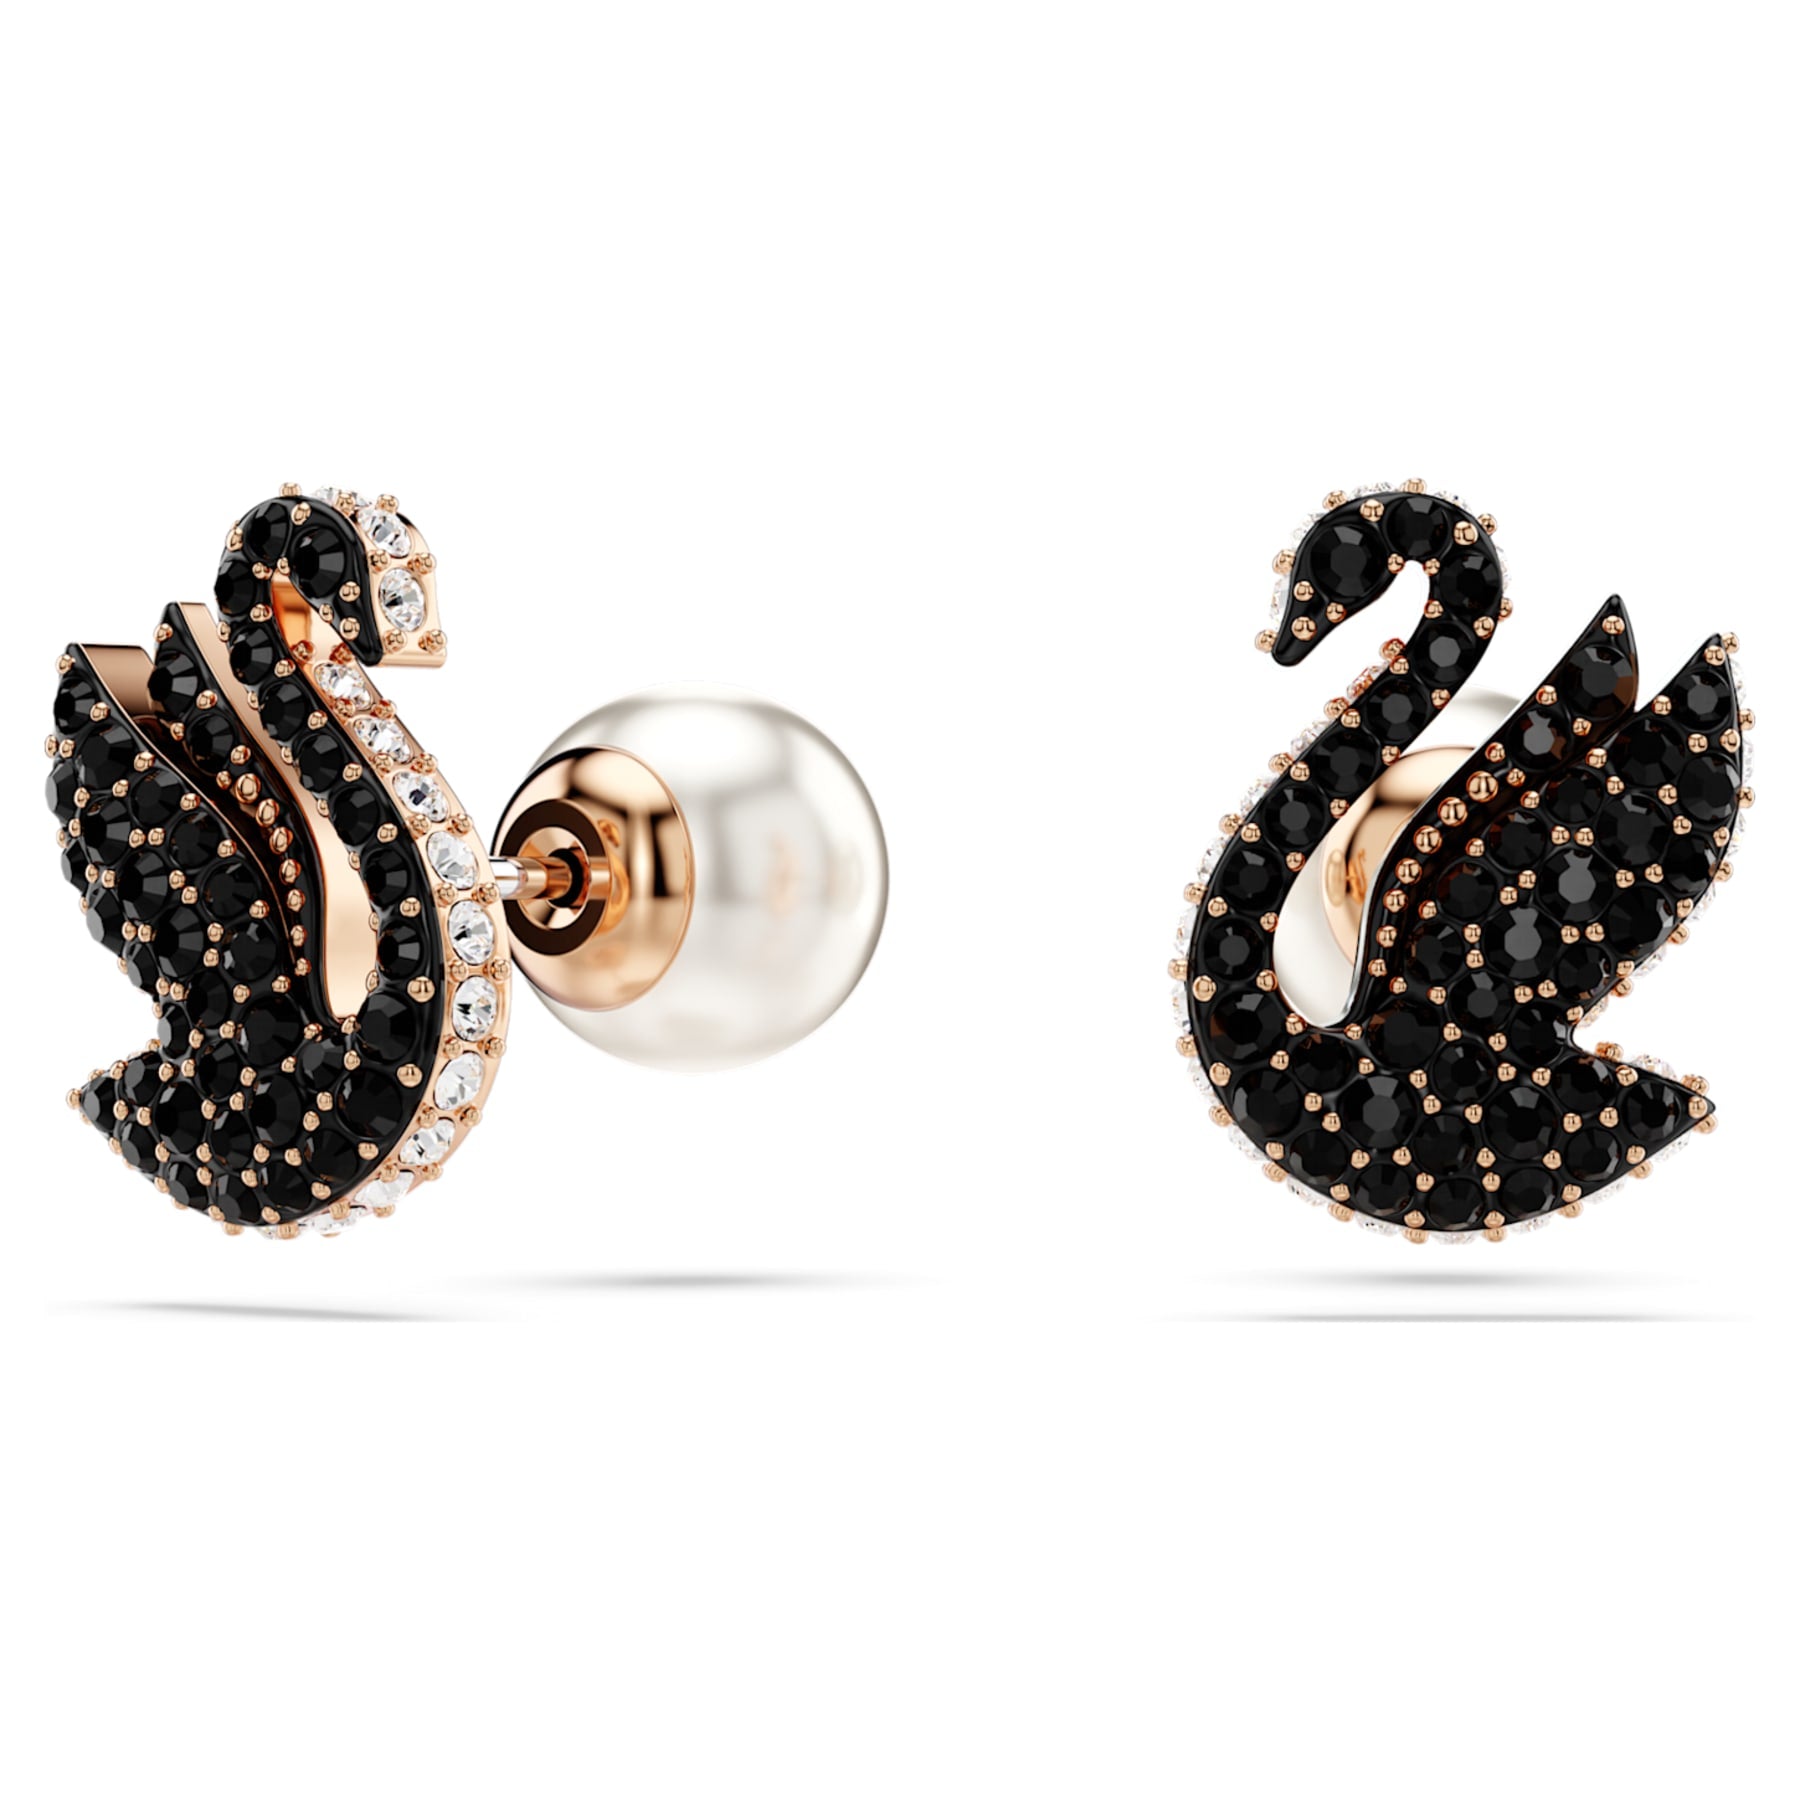 Swan - Black Rose - Stud Earrings - Swarovski